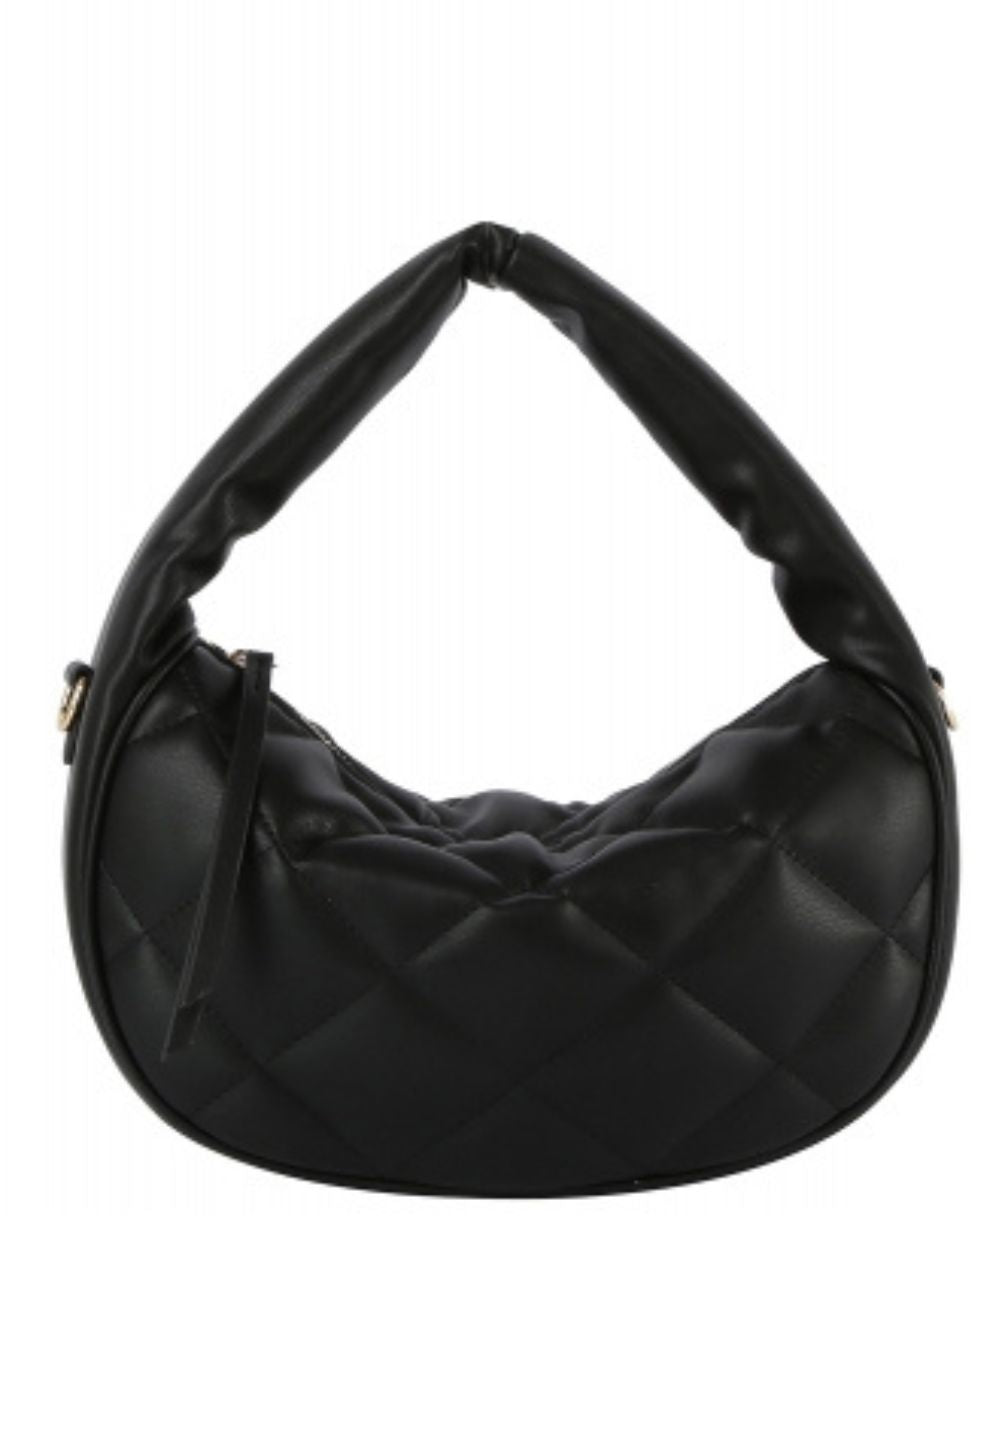 Black Quilted Puffy Hobo Shoulder Handbag